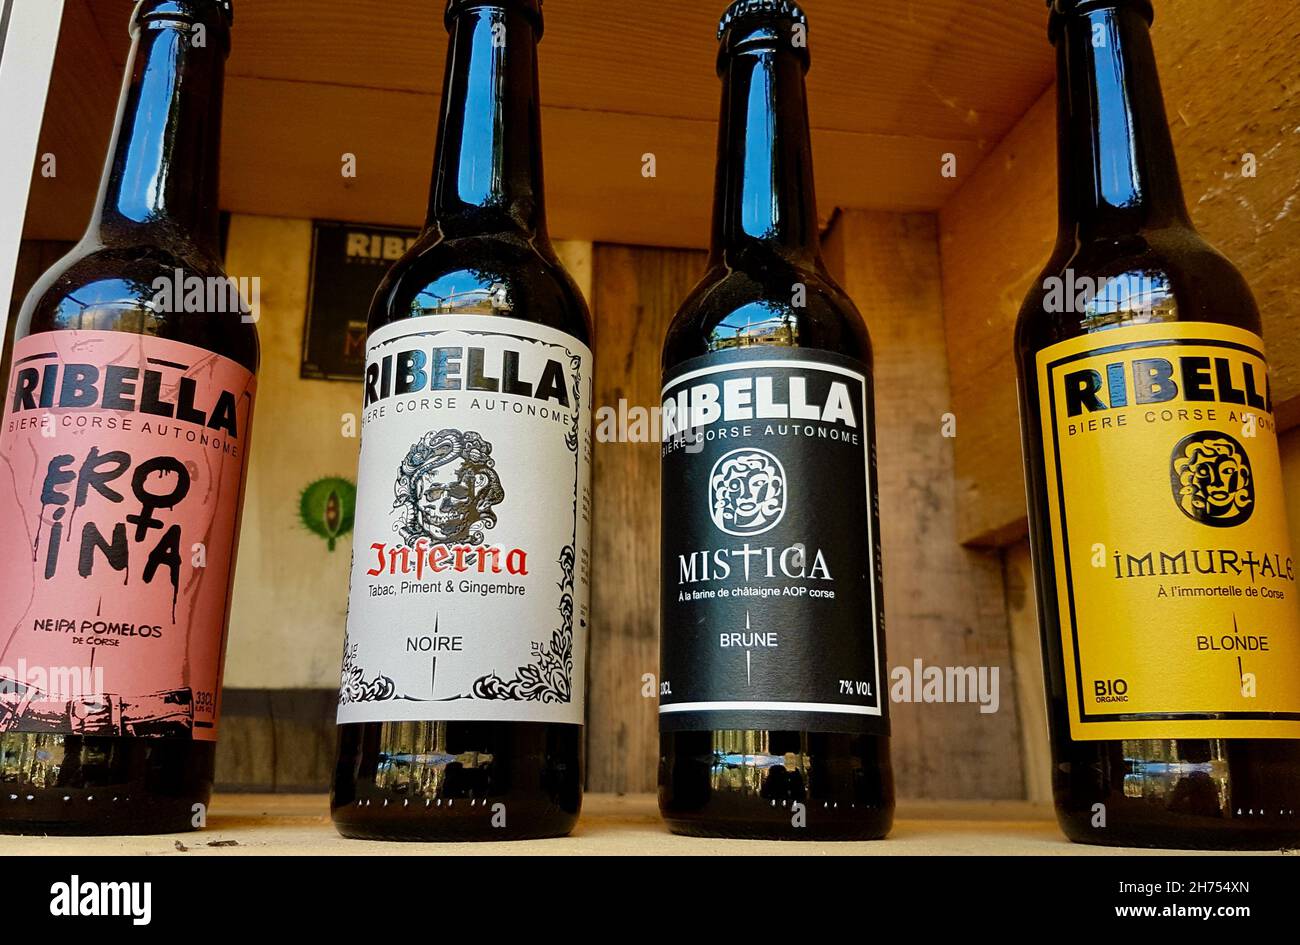 Patrimonio, Korsika, 23.08.2020. Auswahl an verschiedenen Craft Bieren im Ribella Brauereiladen. Stockfoto